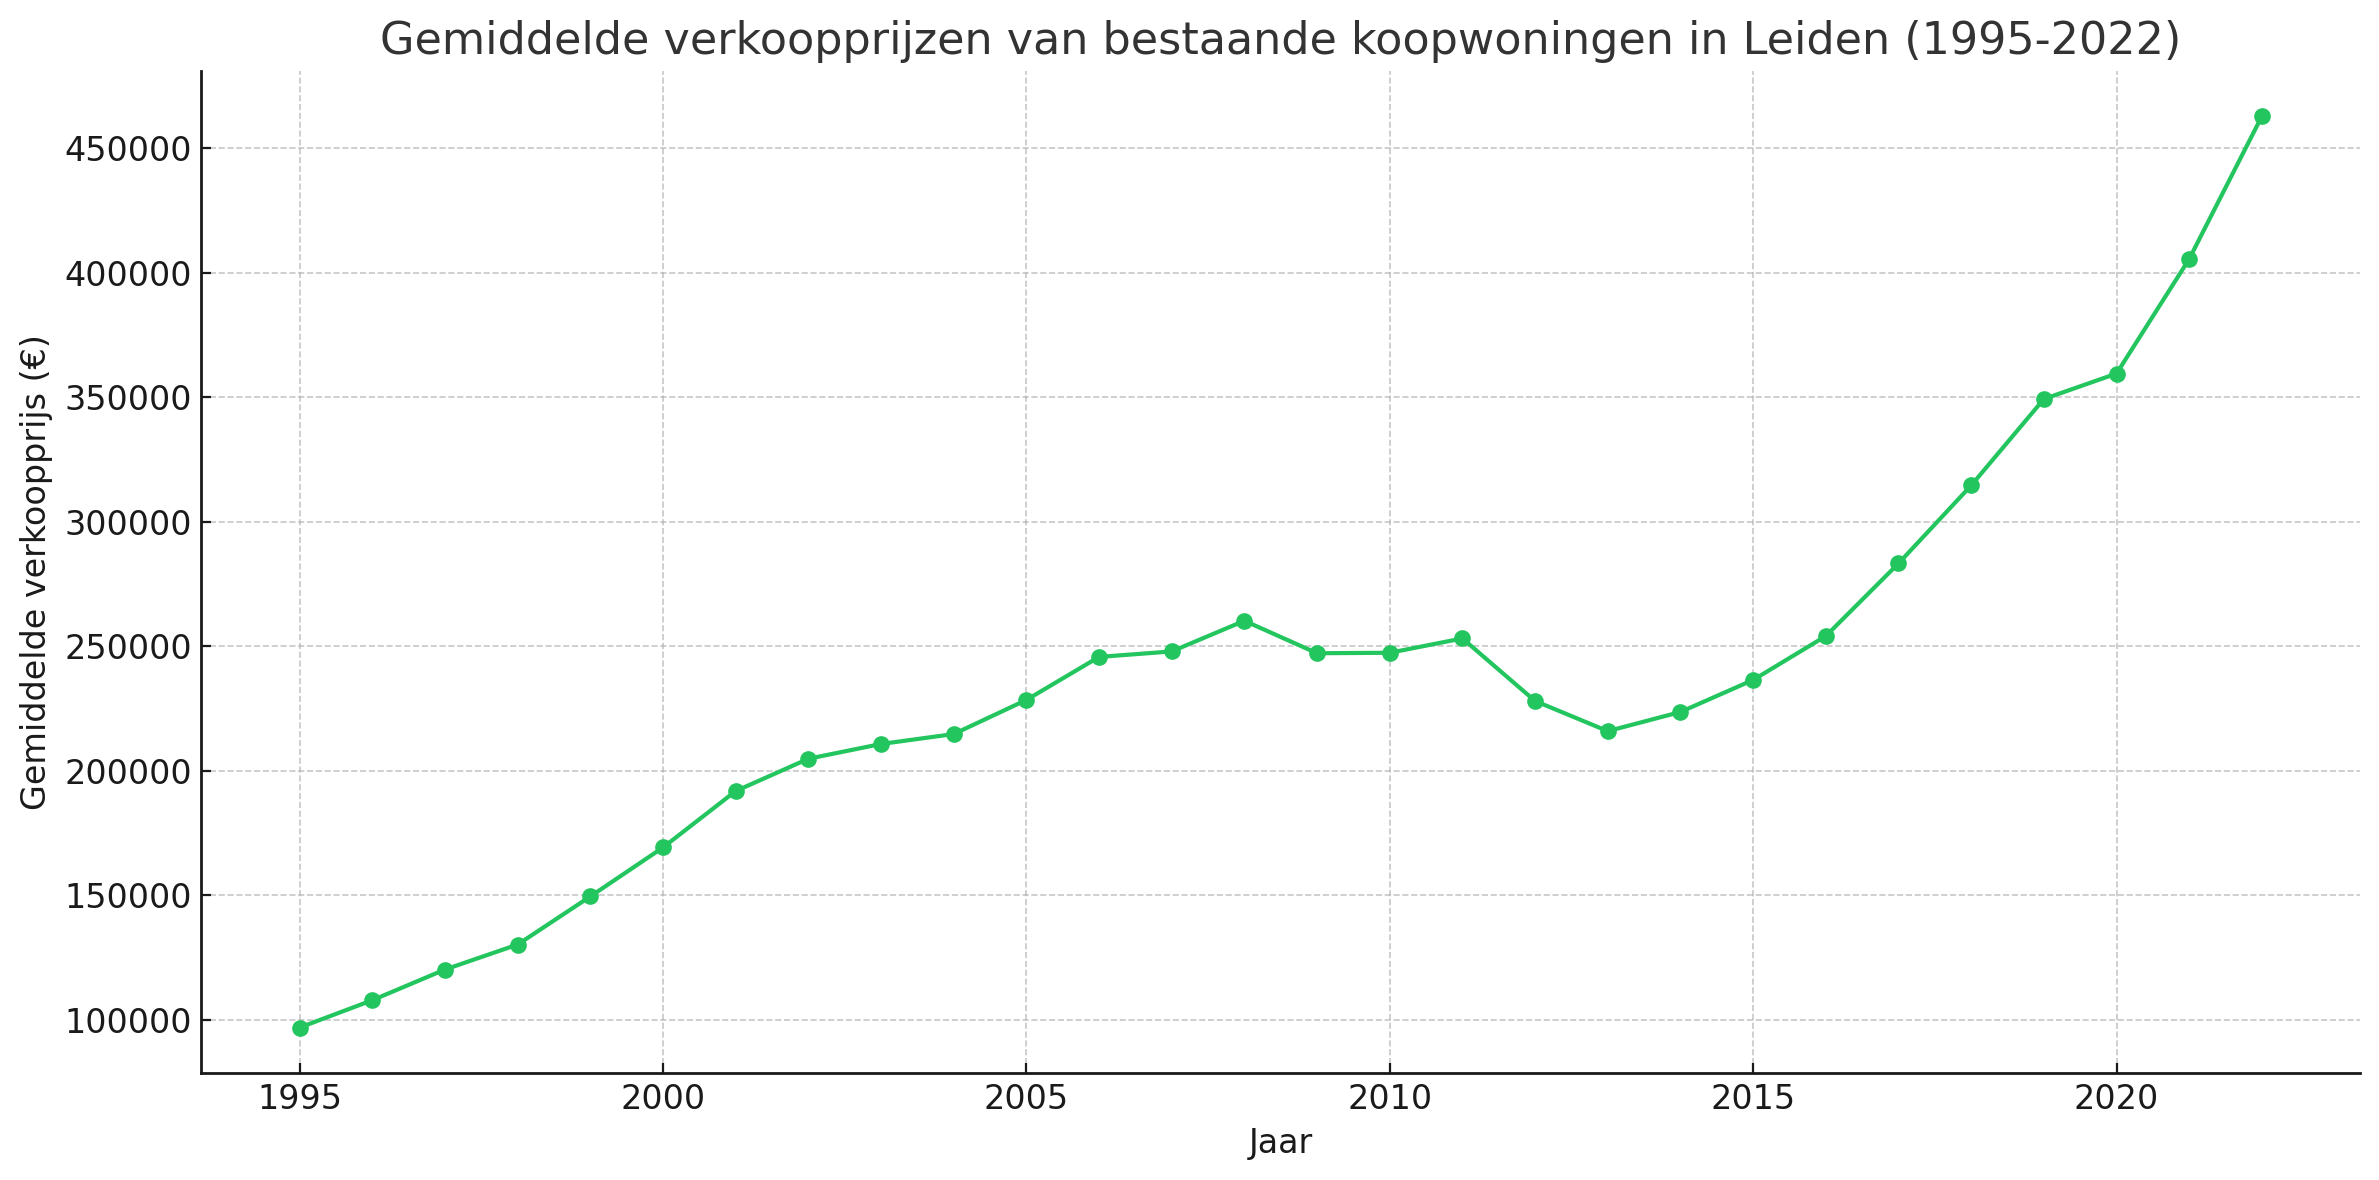 Gemiddelde verkoopprijzen bestaande koopwoningen in Leiden